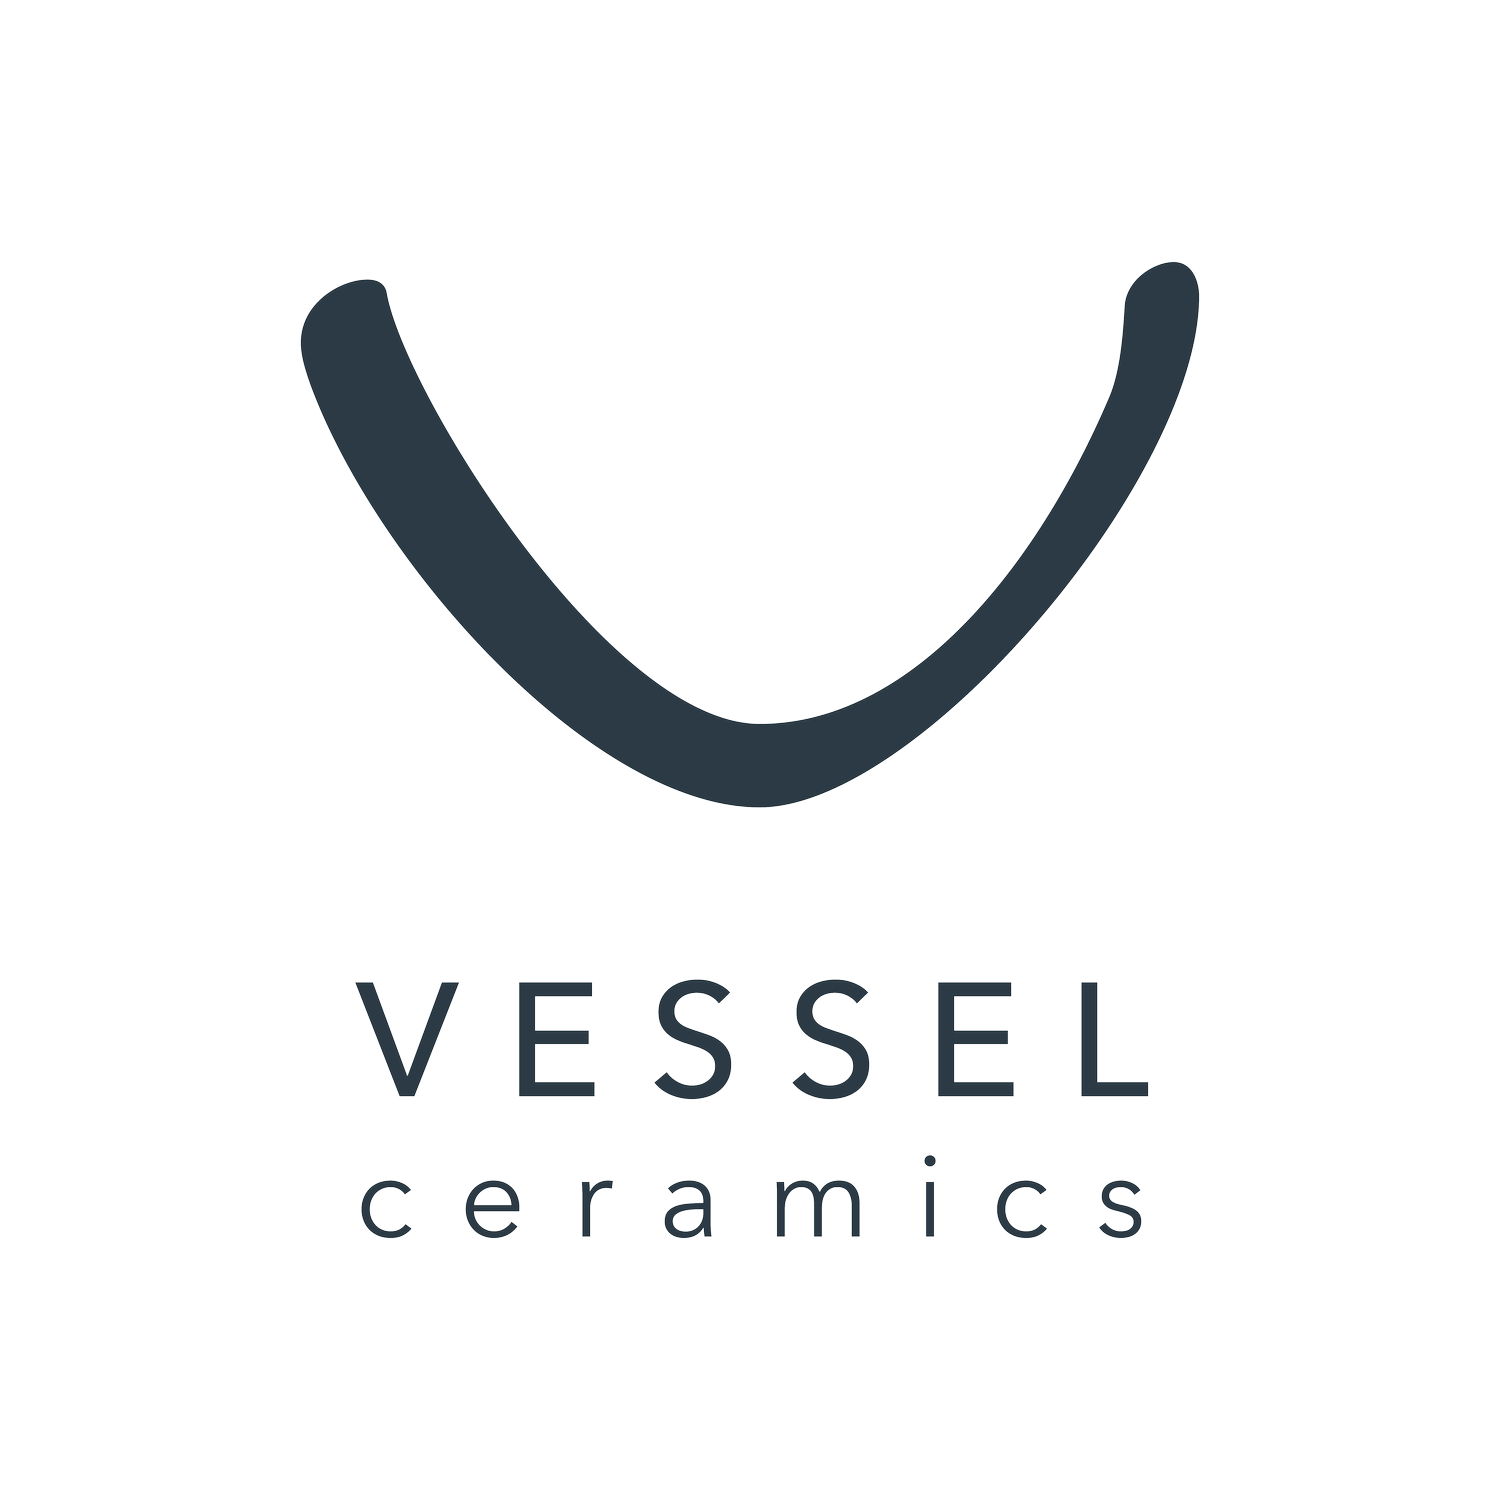 VESSEL Ceramics